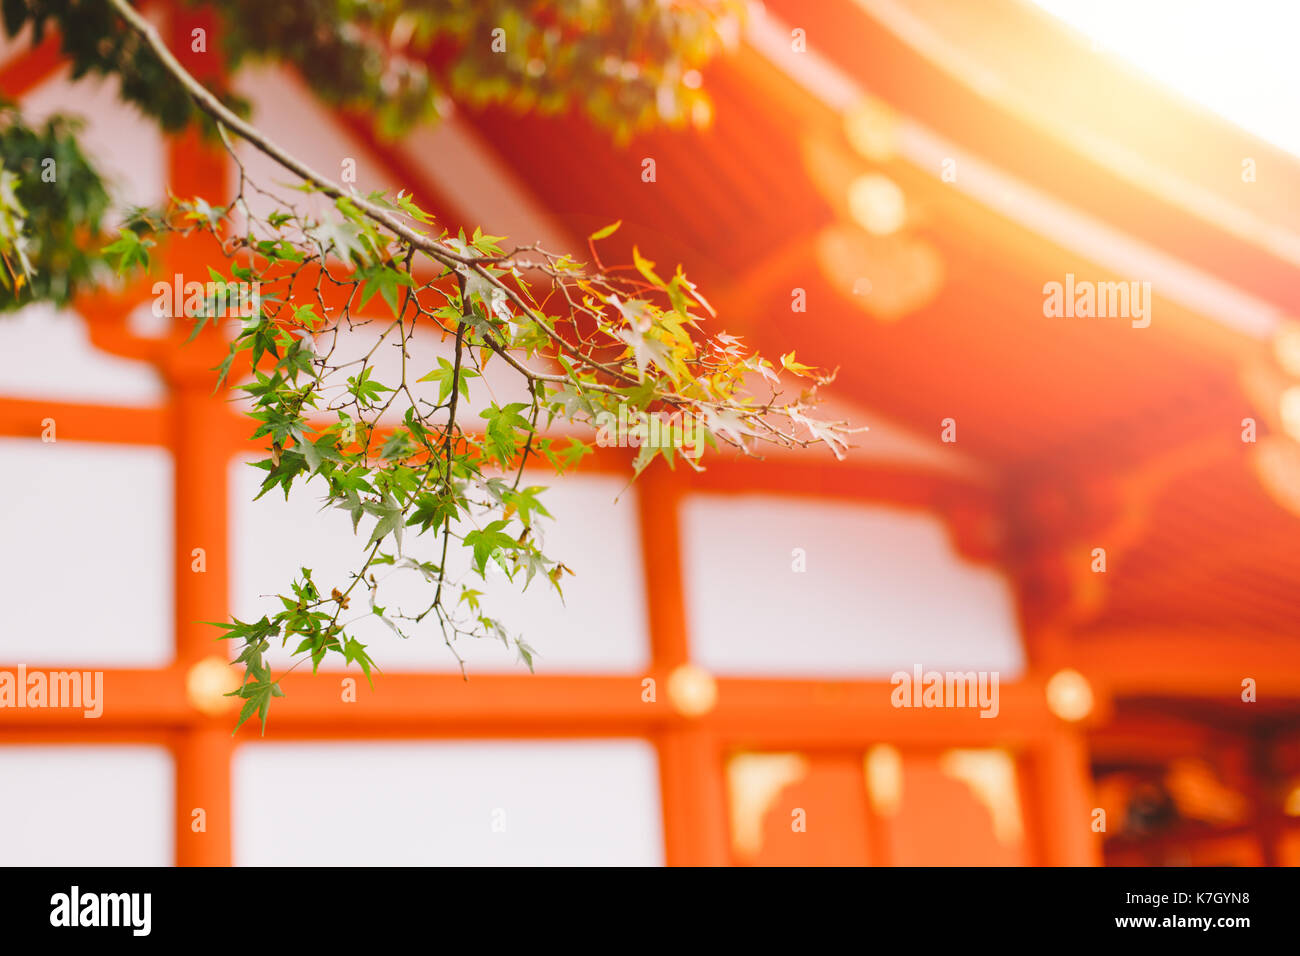 Schöne Sonne Licht am Fushimi Inari Schrein (Fushimi Inari Taisha) red-Japan schrein Tempel im Herbst Herbst Jahreszeit. Stockfoto